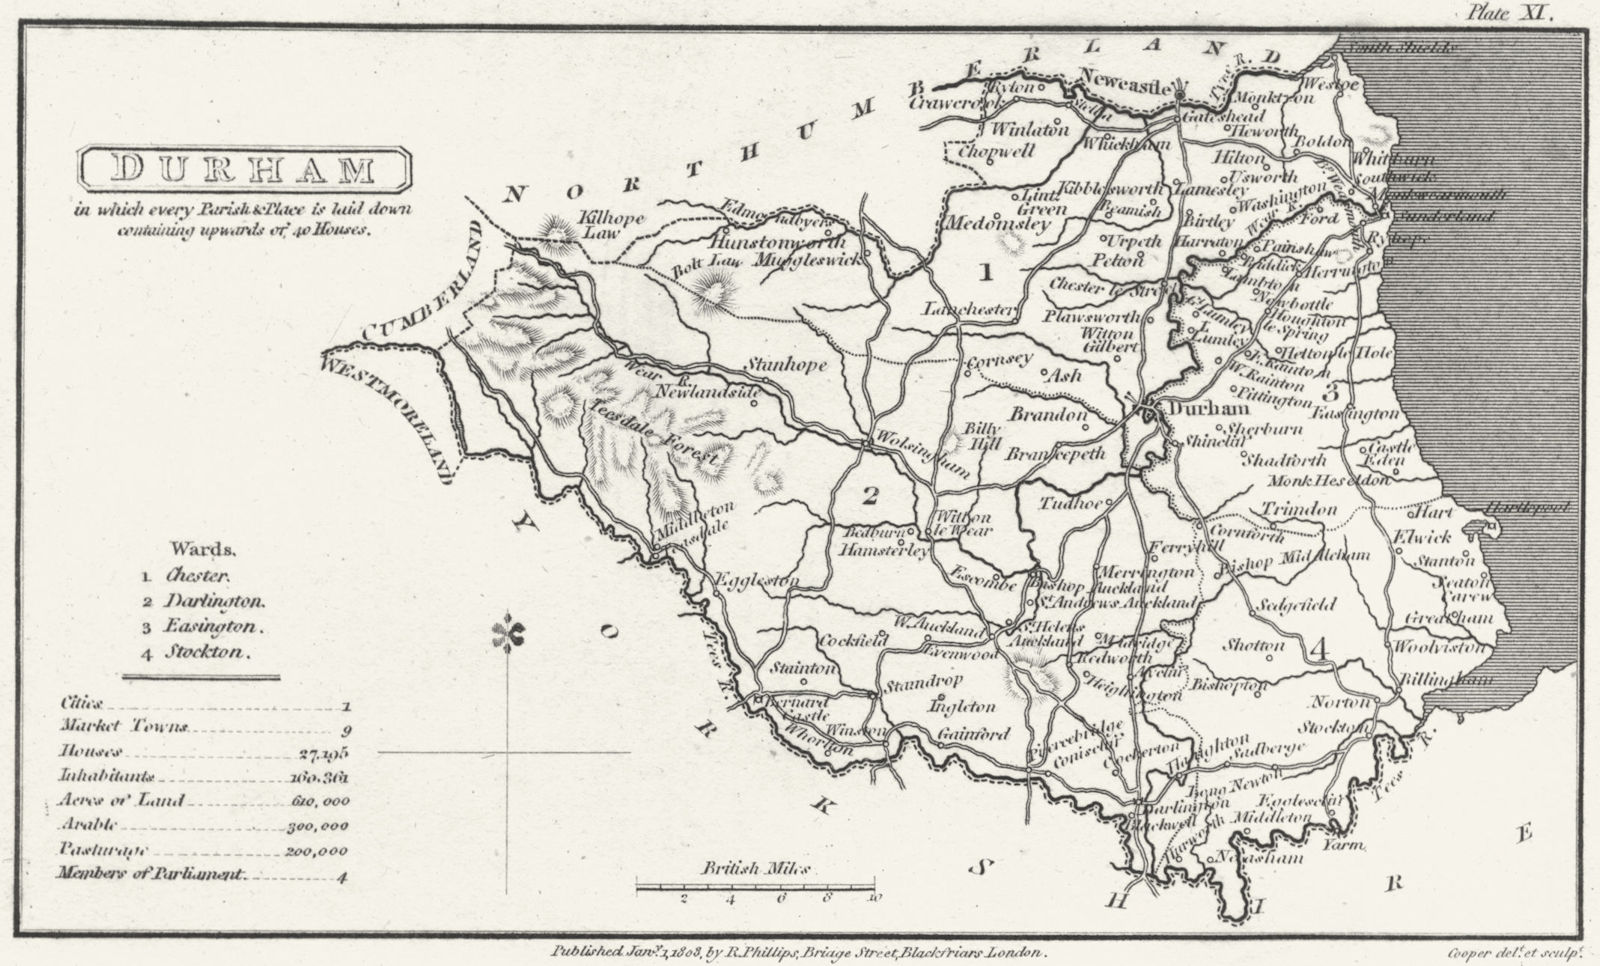 DURHAM. Capper. Uncommon 1808 old antique vintage map plan chart